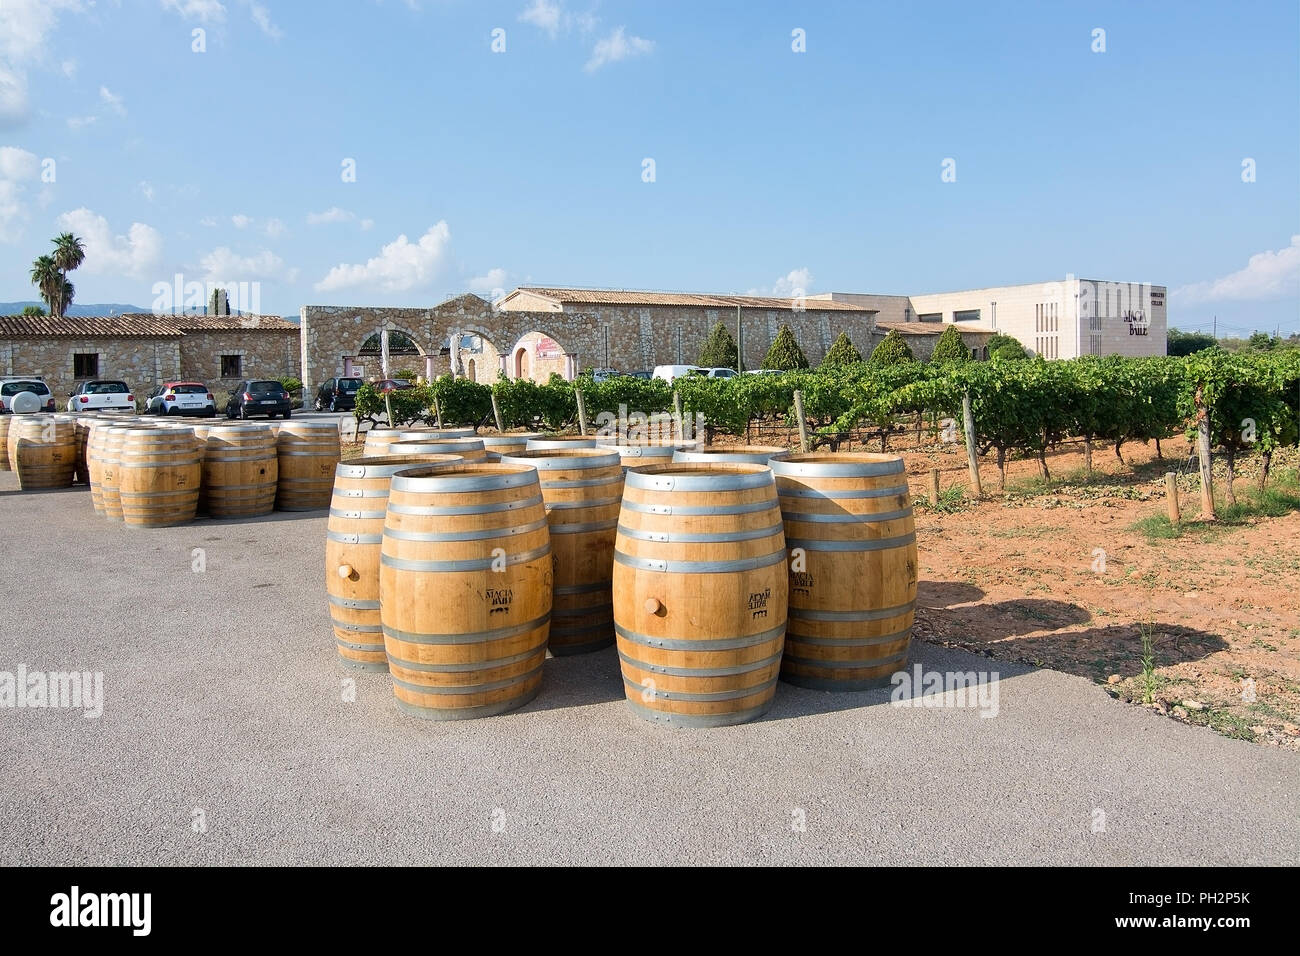 MALLORCA, SPANIEN - 22. AUGUST 2018: Weinfässer aus Eiche außerhalb großer Macia Batle Weingut am 22. August 2018 auf Mallorca, Spanien Stockfoto